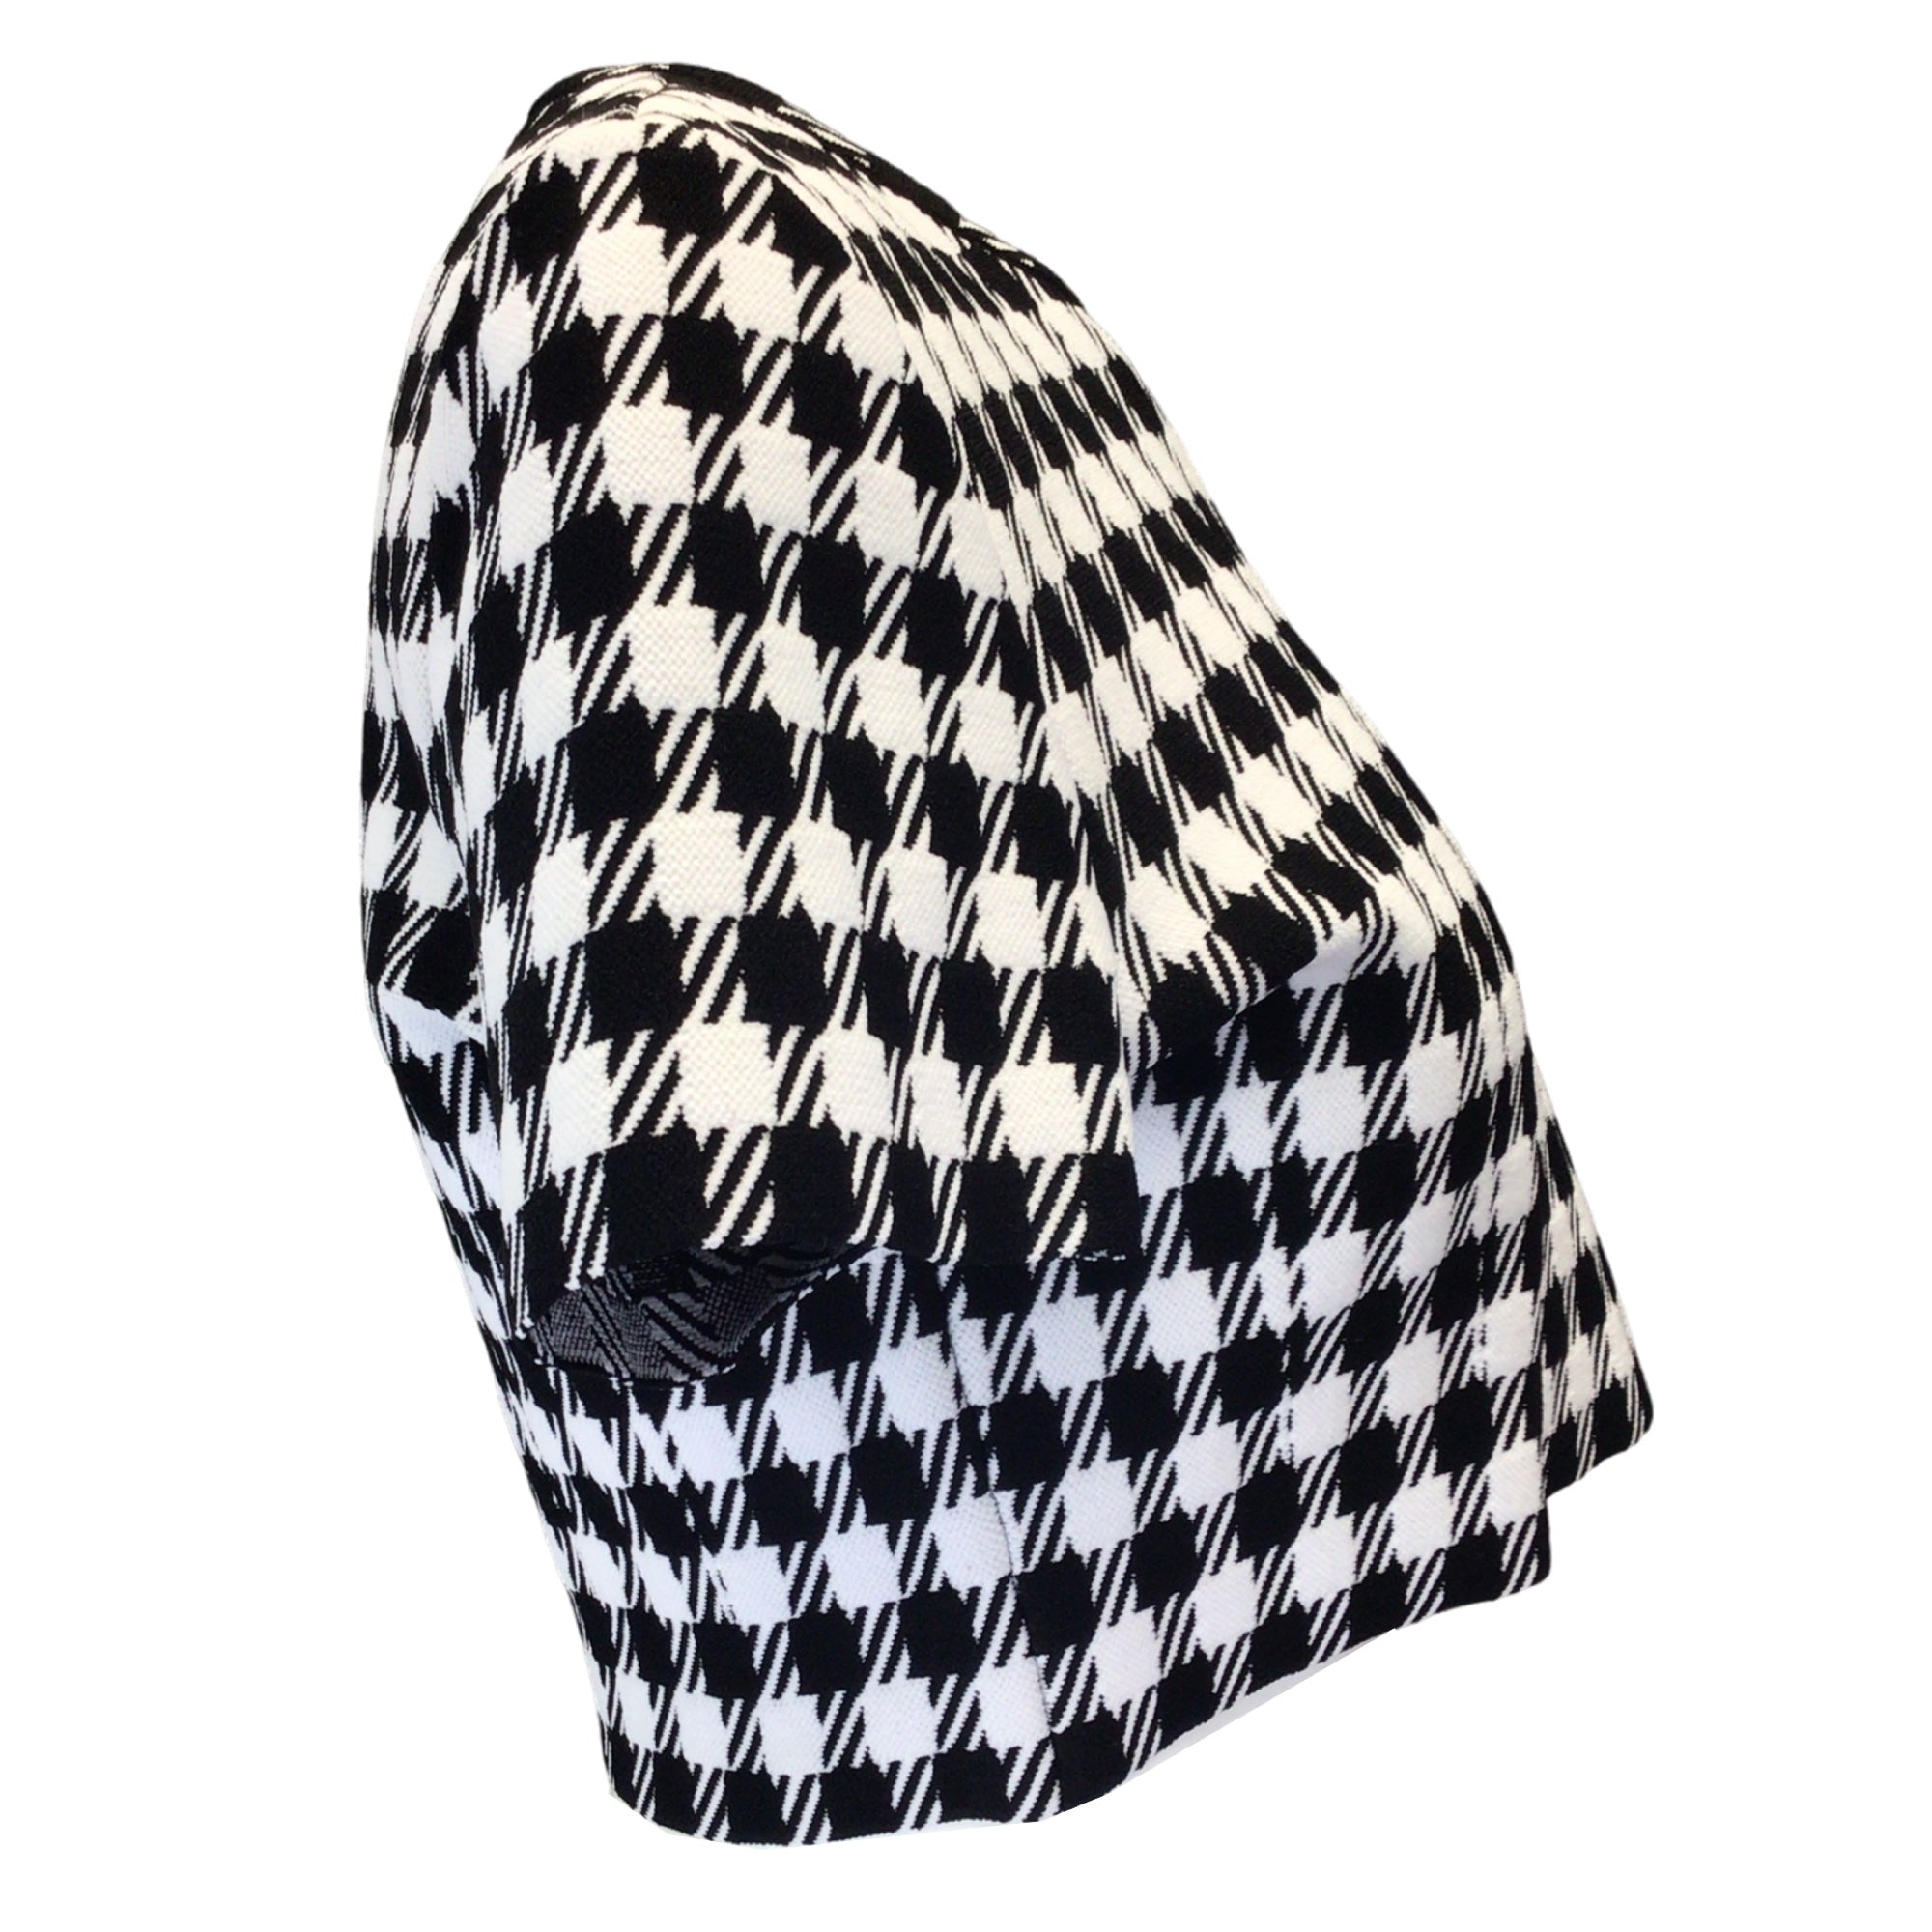 Alaia Black / White Cropped Check Knit Top